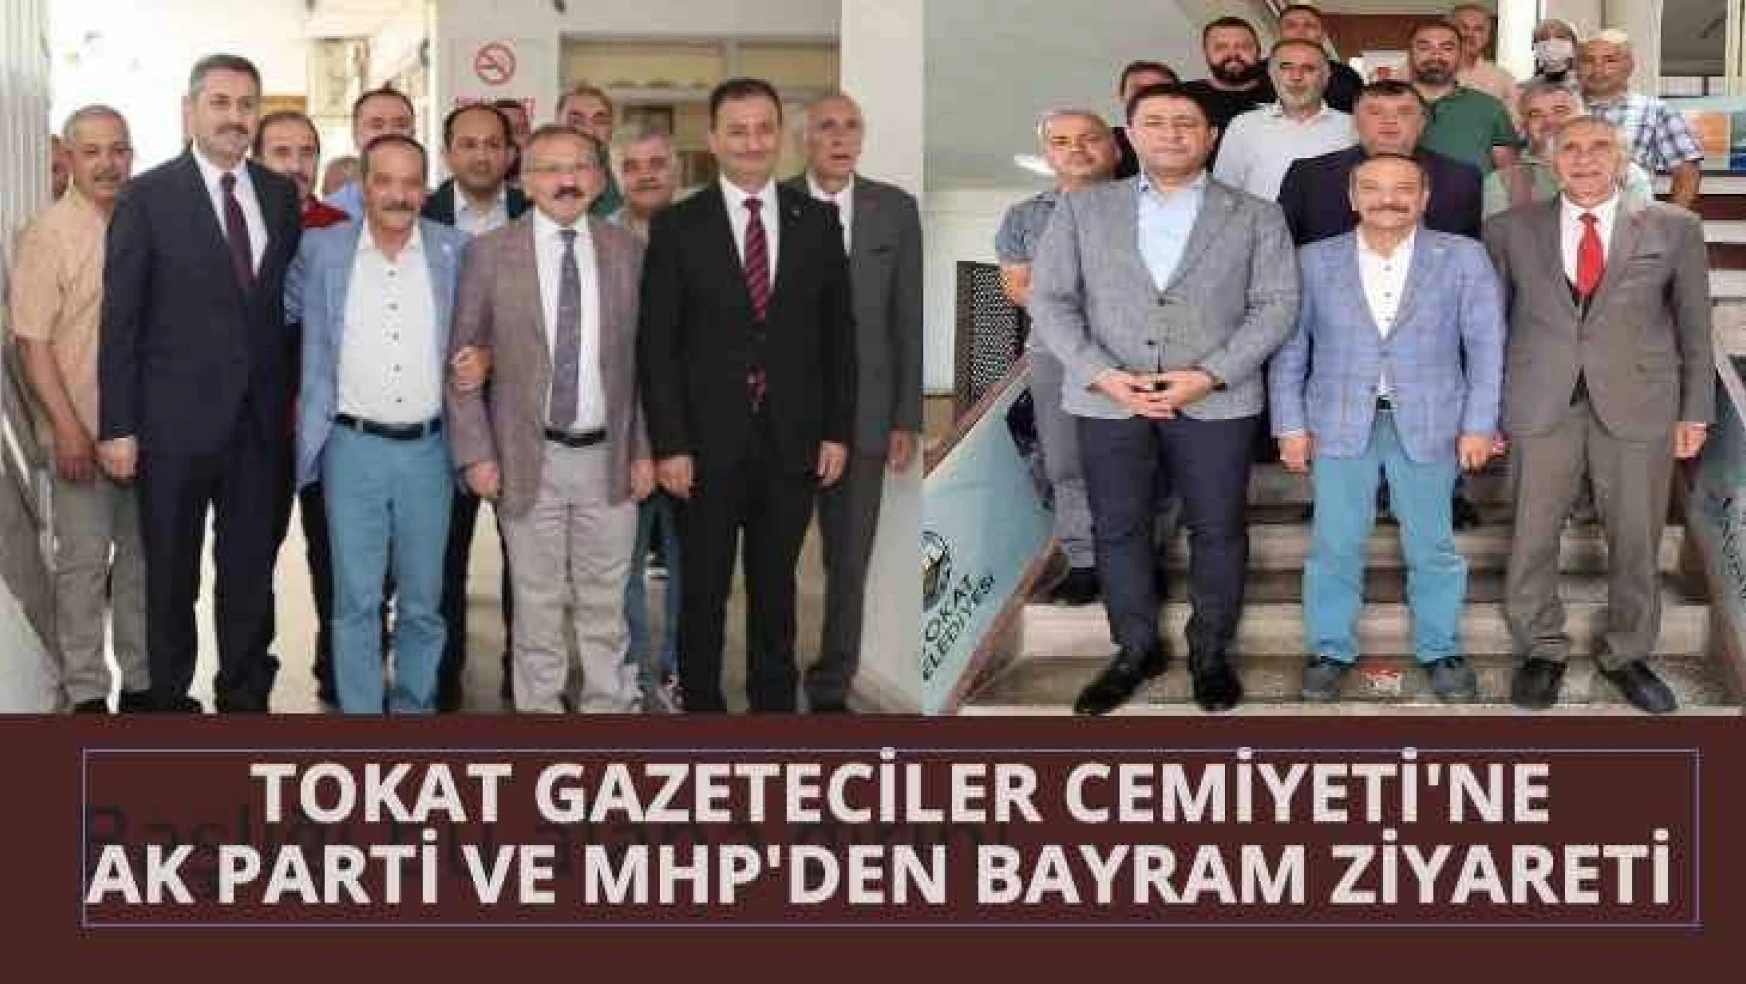 Tokat Gazeteciler Cemiyeti'ne AK Parti ve MHP'den bayram ziyareti